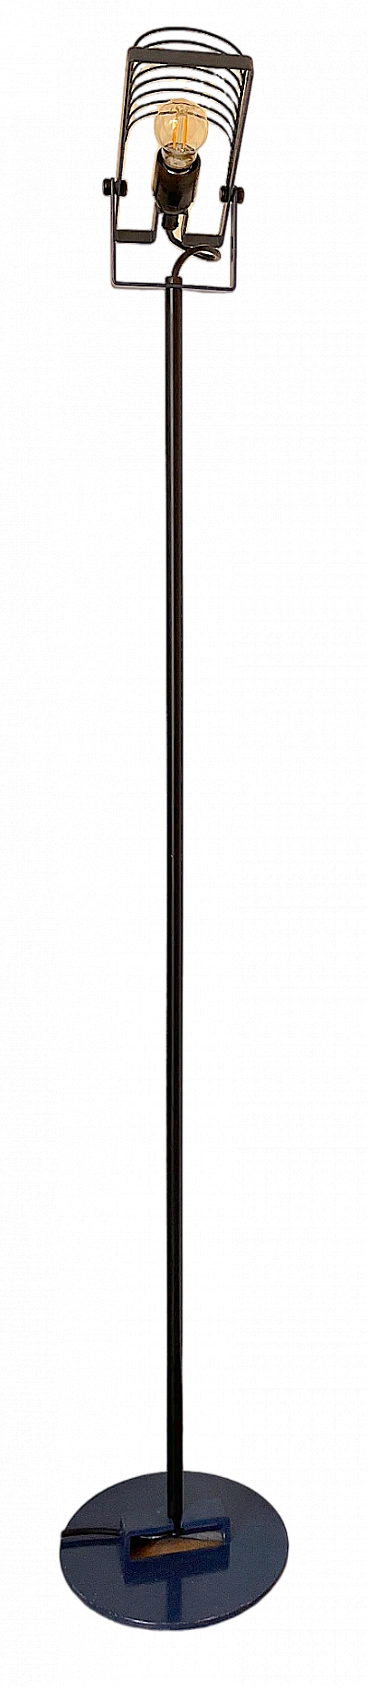 Sintesi floor lamp by Ernesto Gismondi for Artemide, 1970s